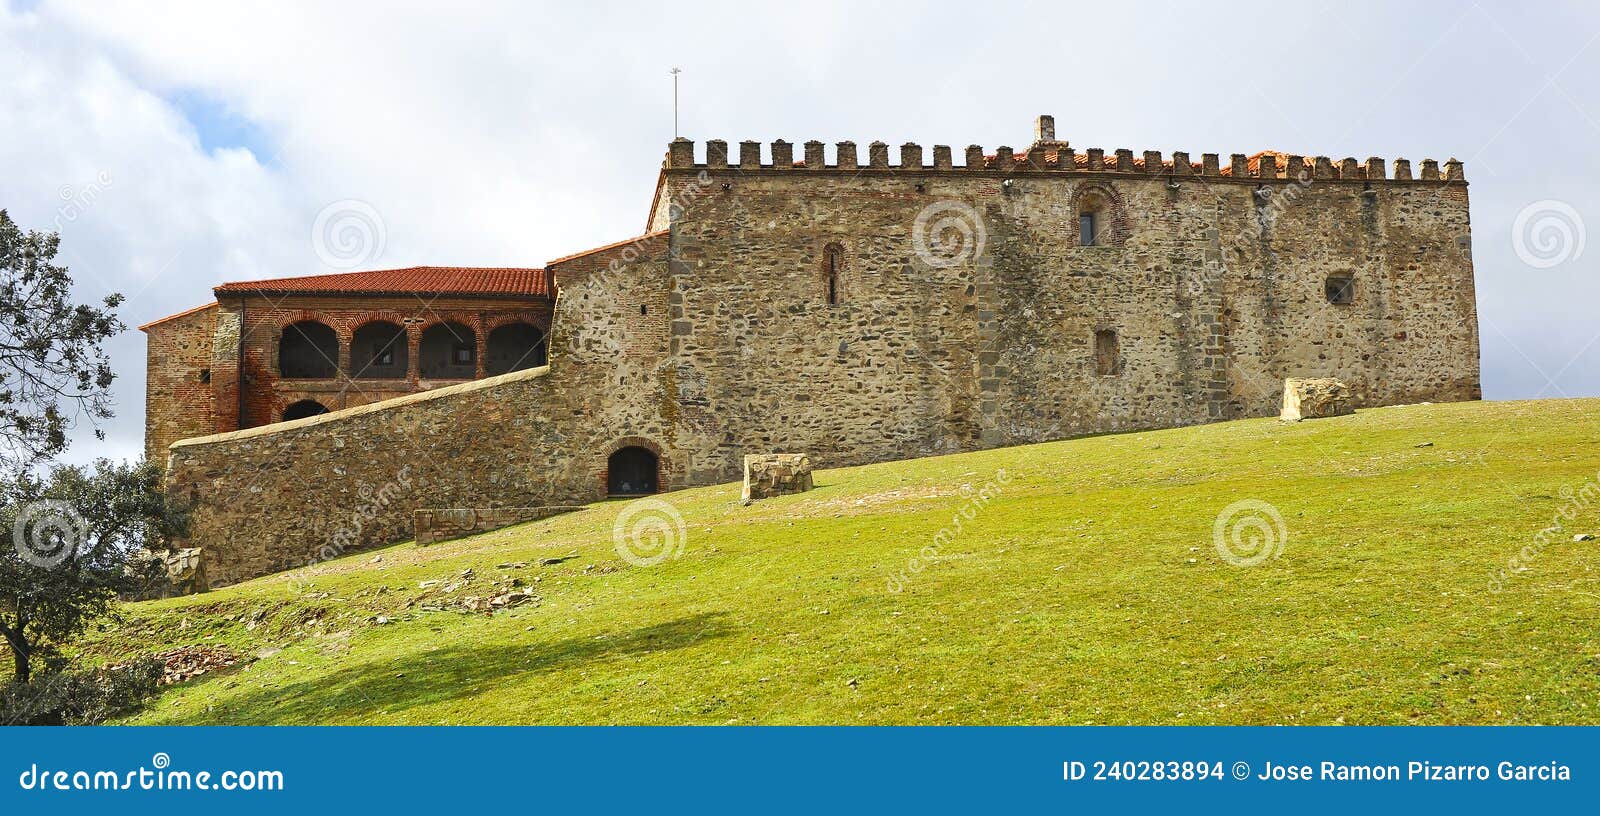 monasterio de tentudia, provincia de badajoz, espaÃÂ±a